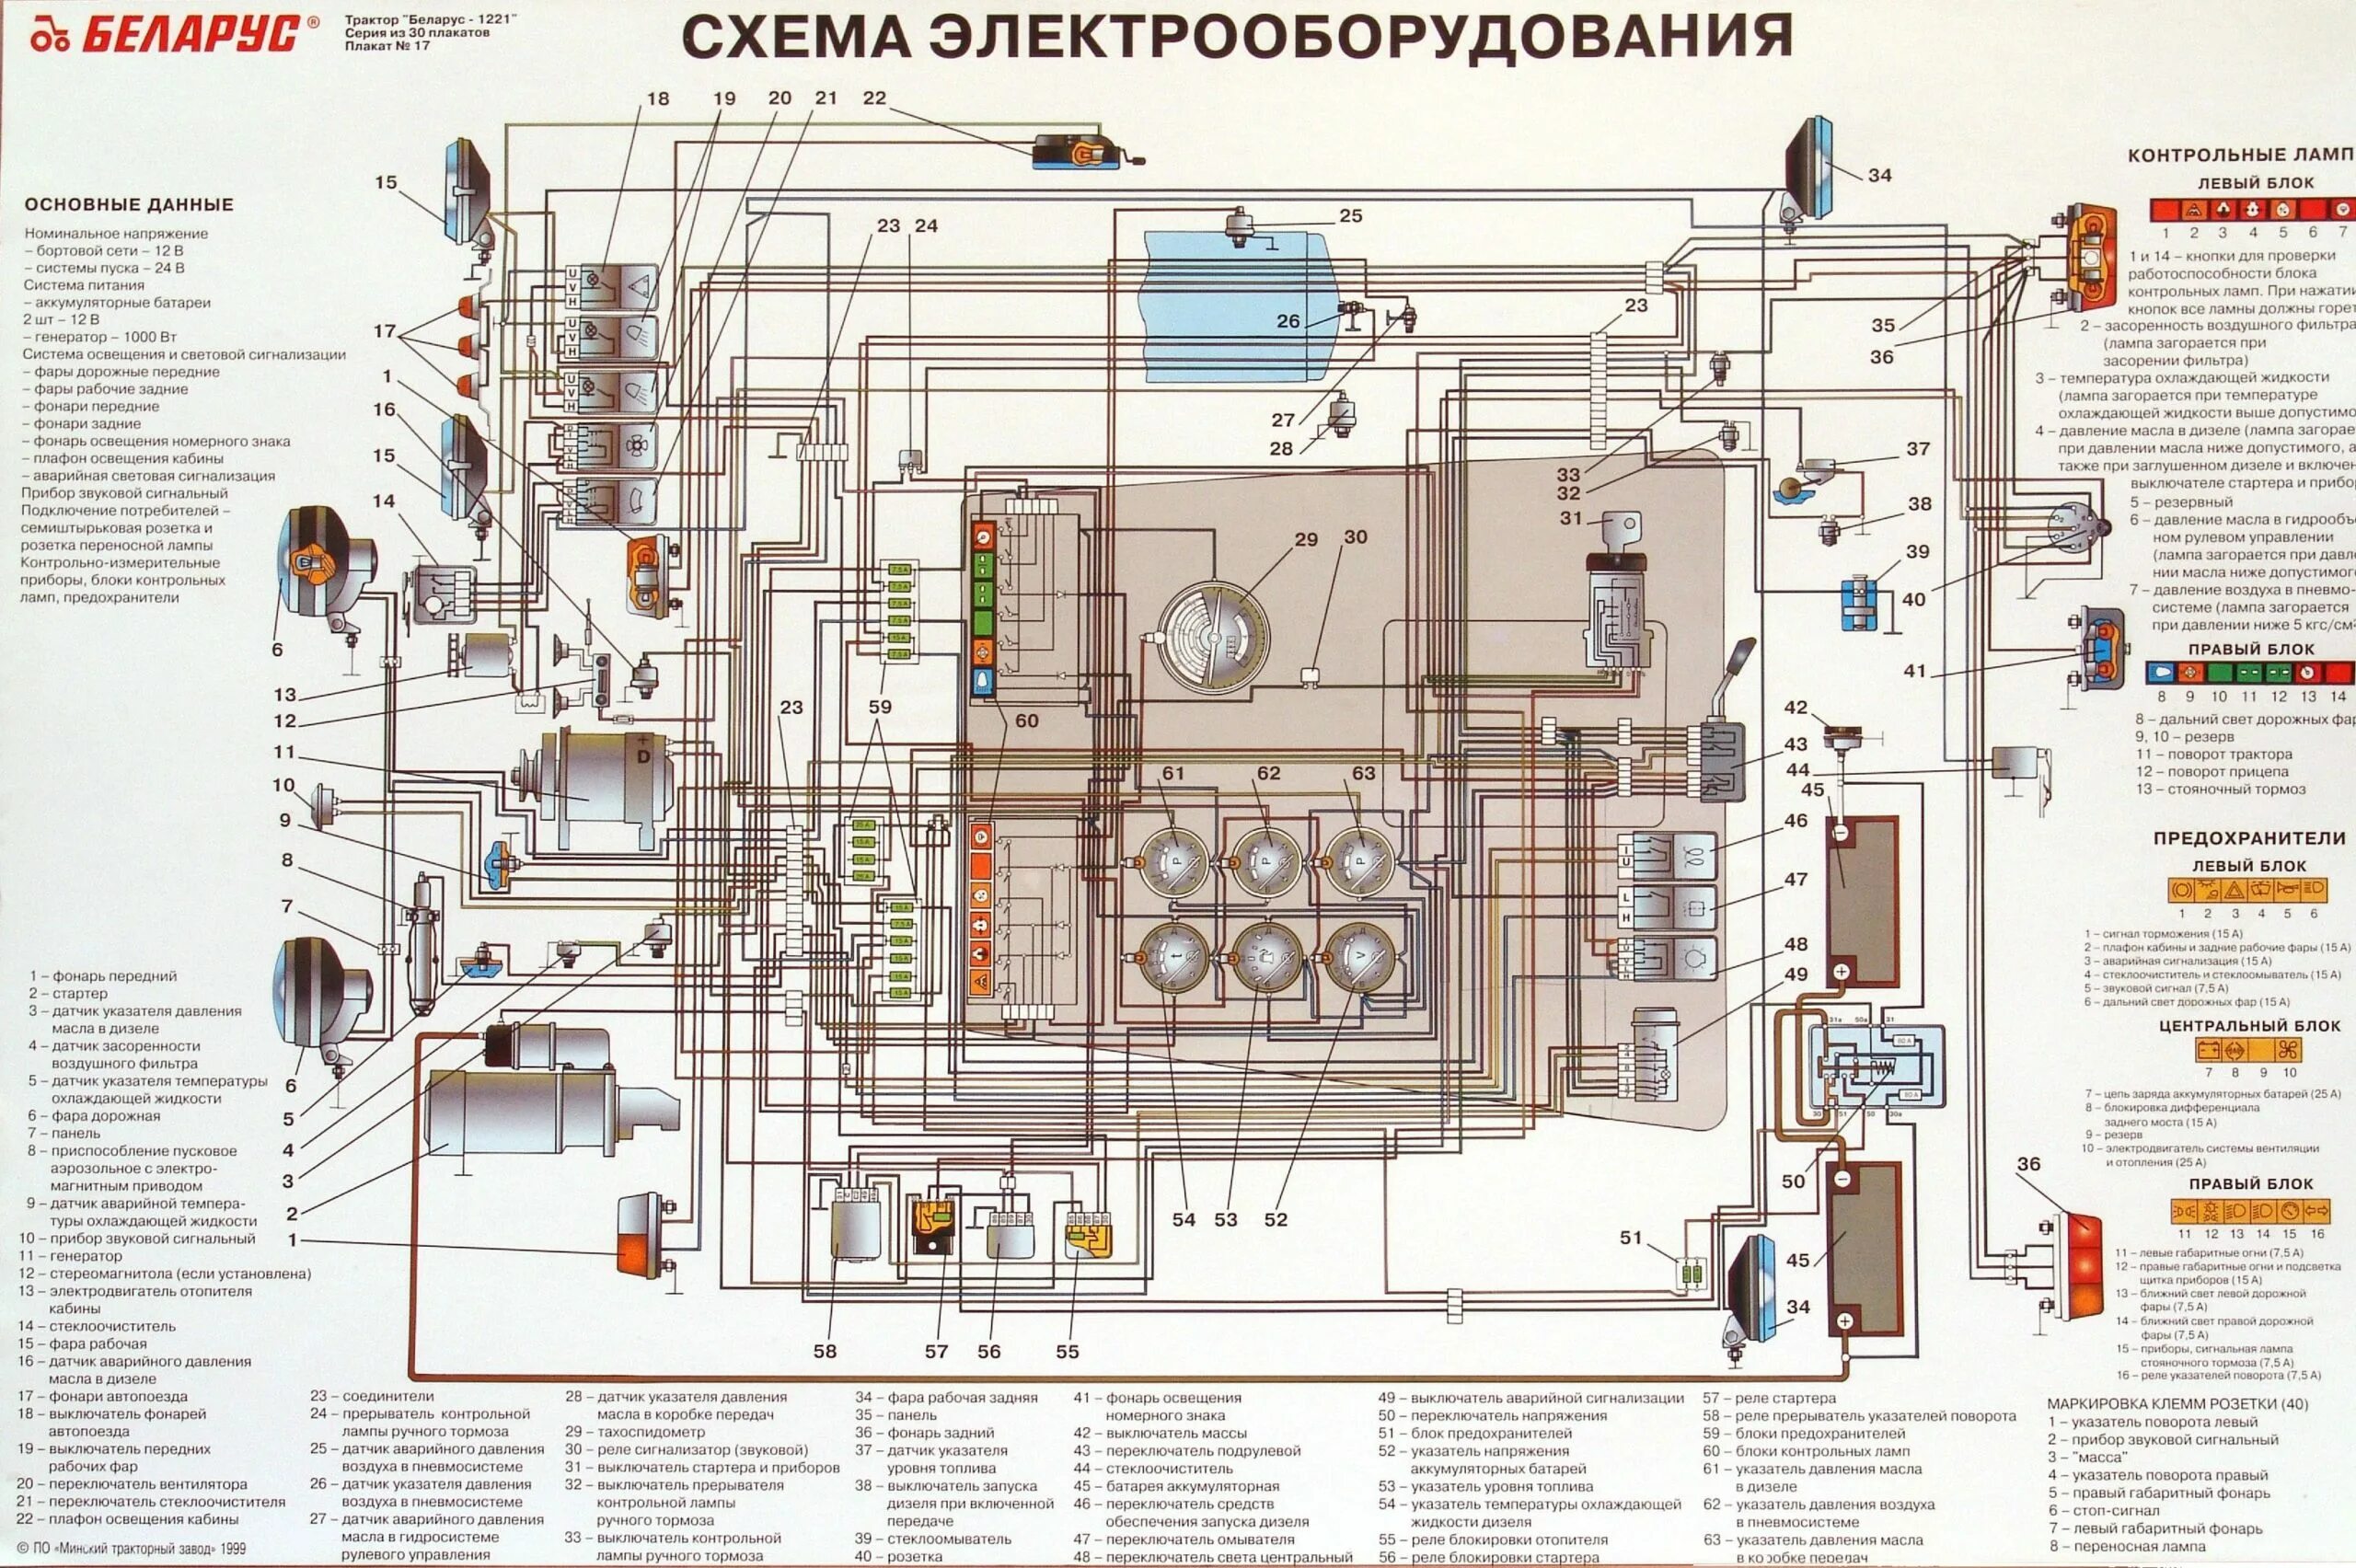 Как включить мтз 82.1. Схема электрооборудования трактора МТЗ 82 1. Электрическая схема трактора Беларус 1221 цветная. Схема электропроводки МТЗ 82.1 цветная с описанием. МТЗ 82 2005 года электрическая схема.